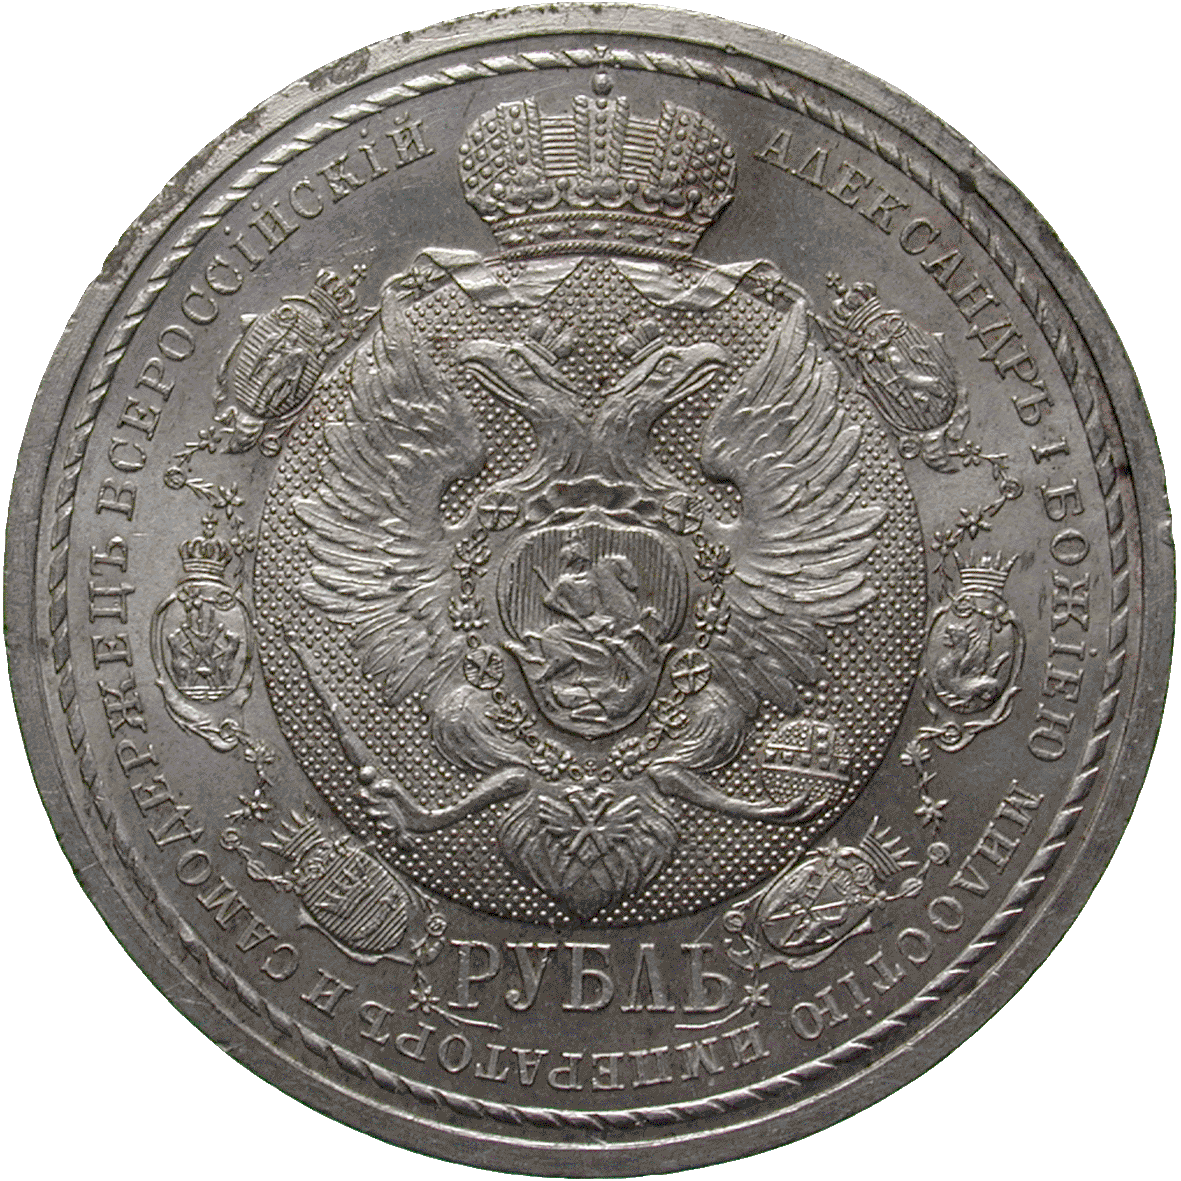 Russian Empire, Nicholas II, Ruble 1912 (obverse)